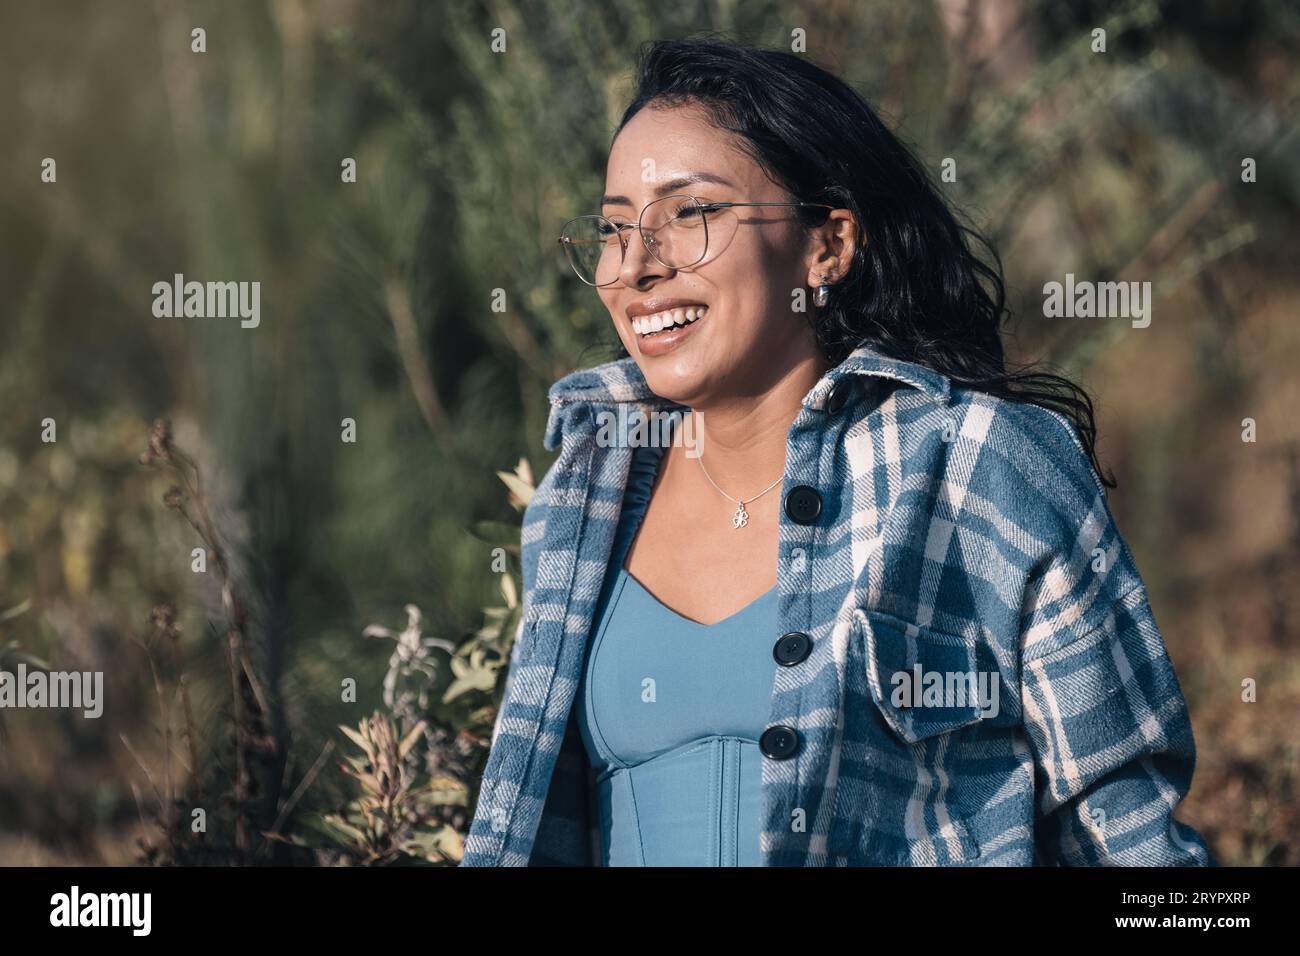 Une belle jeune femme avec des lunettes sourit au coucher du soleil dans la nature Banque D'Images